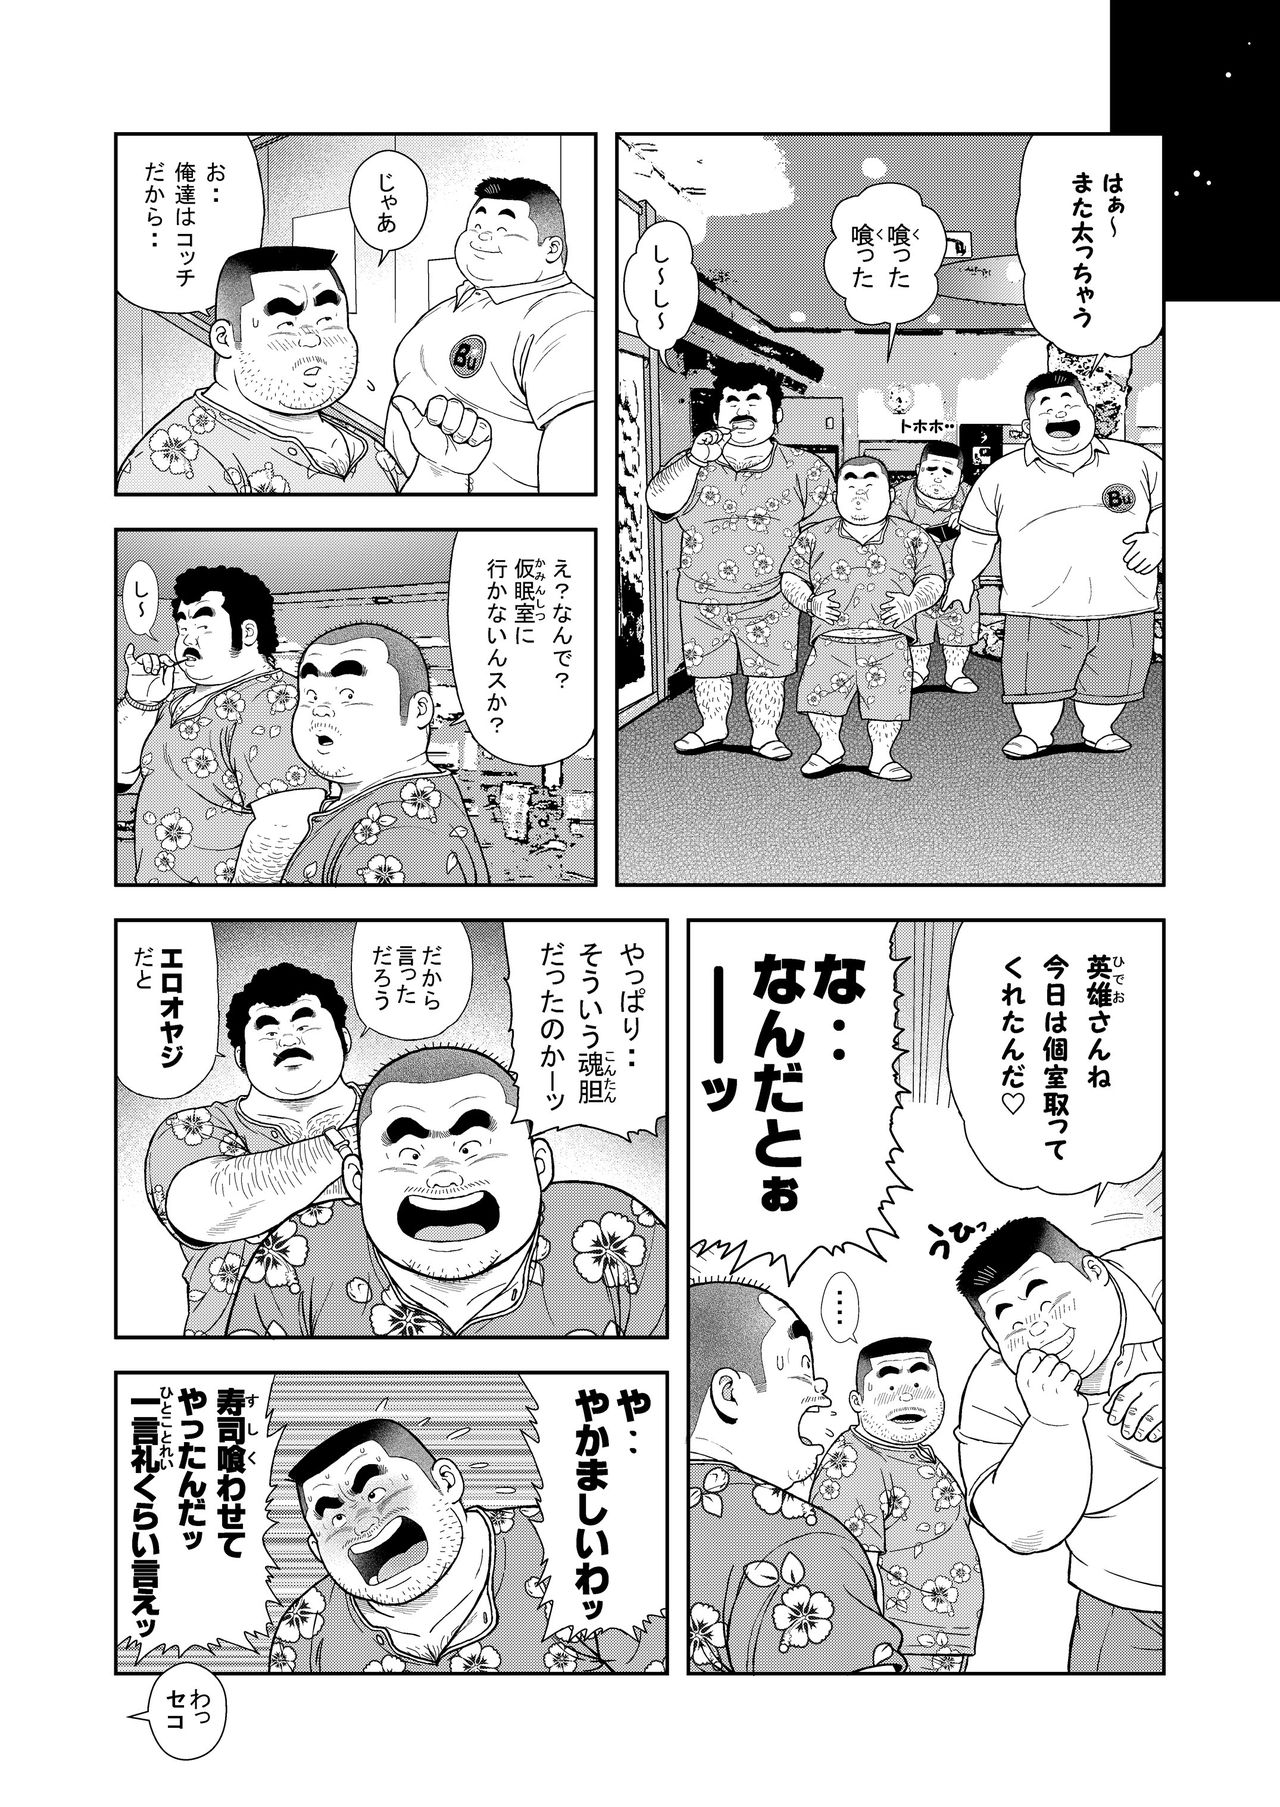 [Kujira] Kunoyu Roppatsume Hidemi no Omanko page 4 full